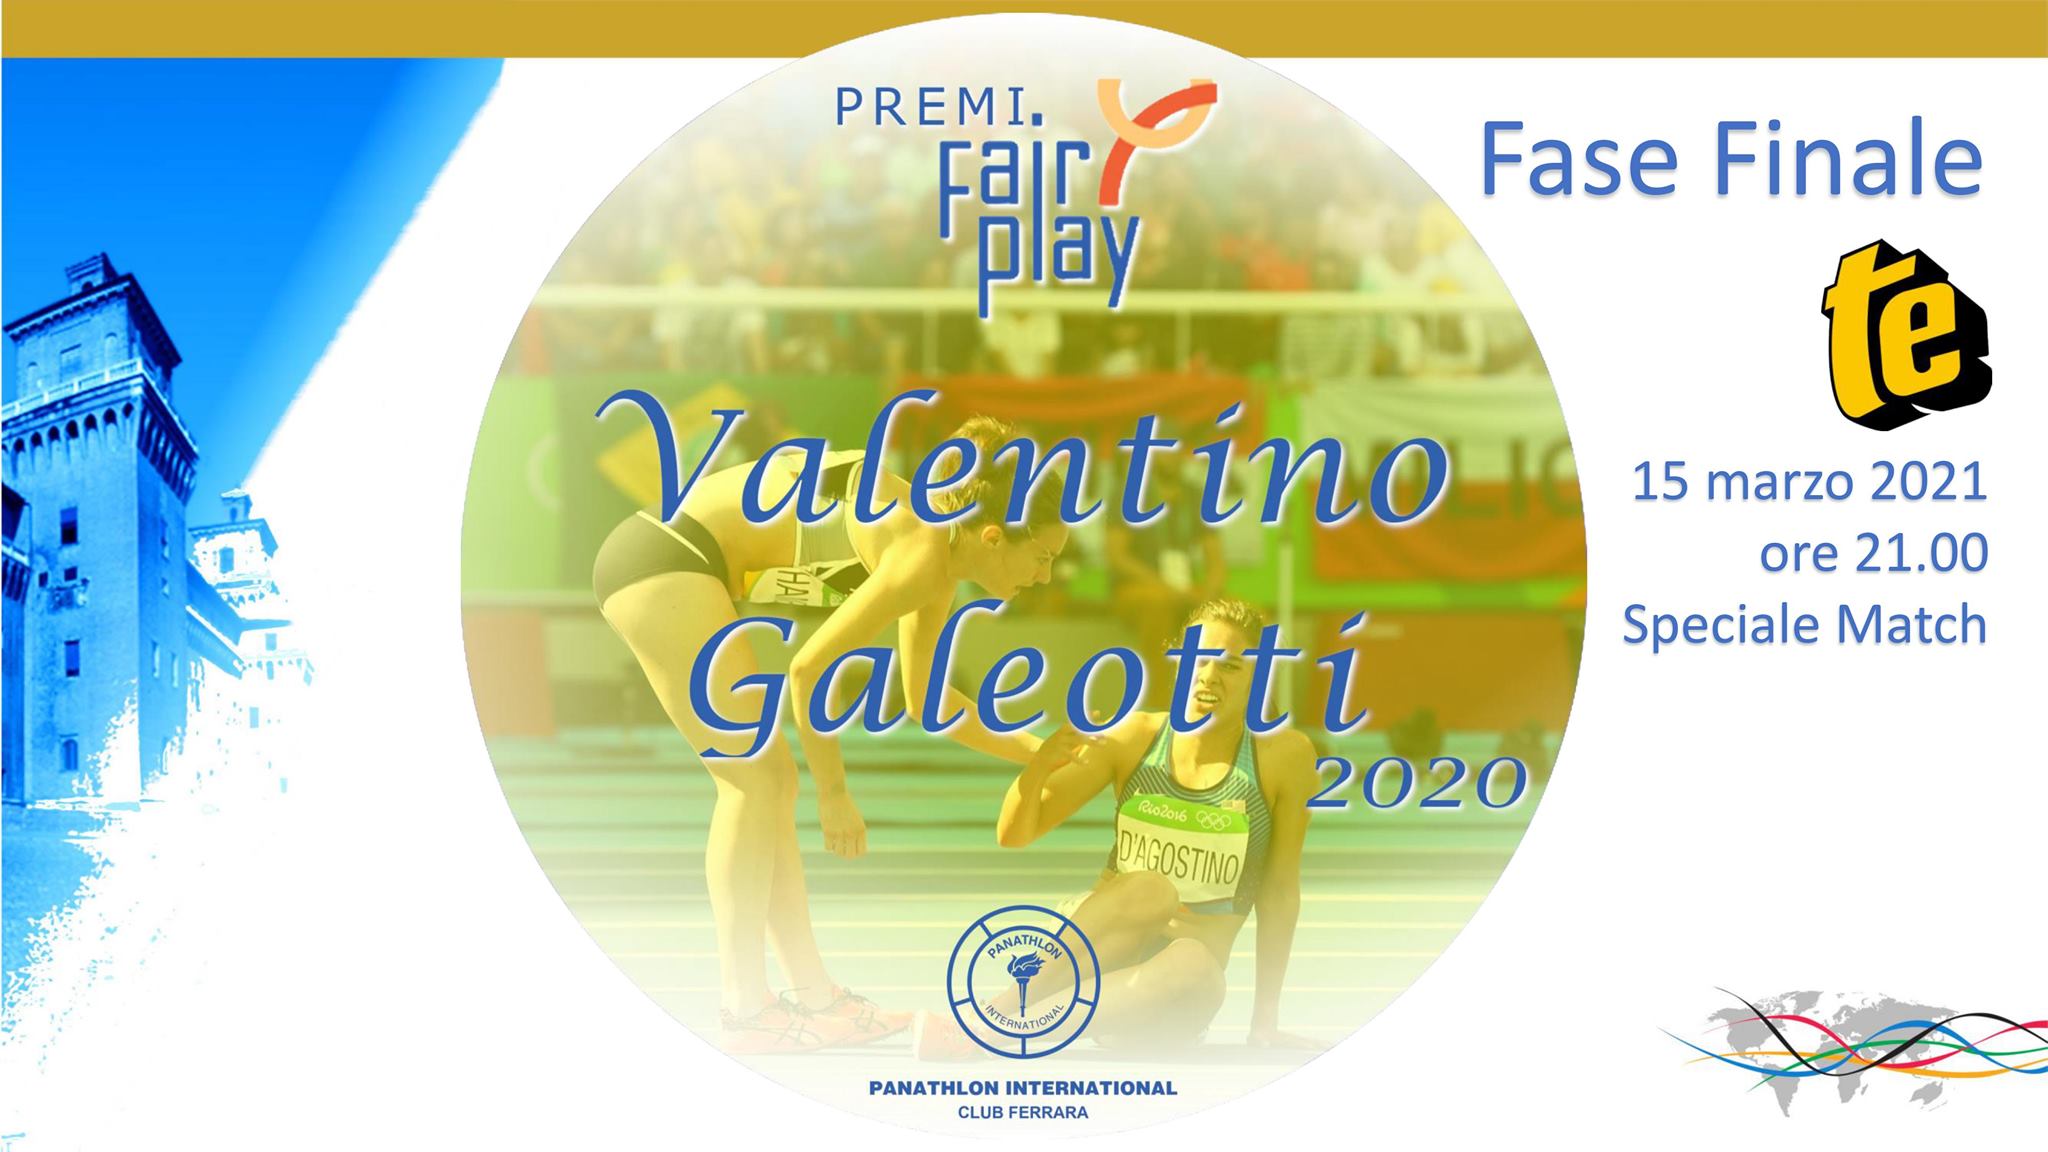 Fese finale dei Premi Fair Play Valentino Galeotti per il 2020, in TV su Telestense